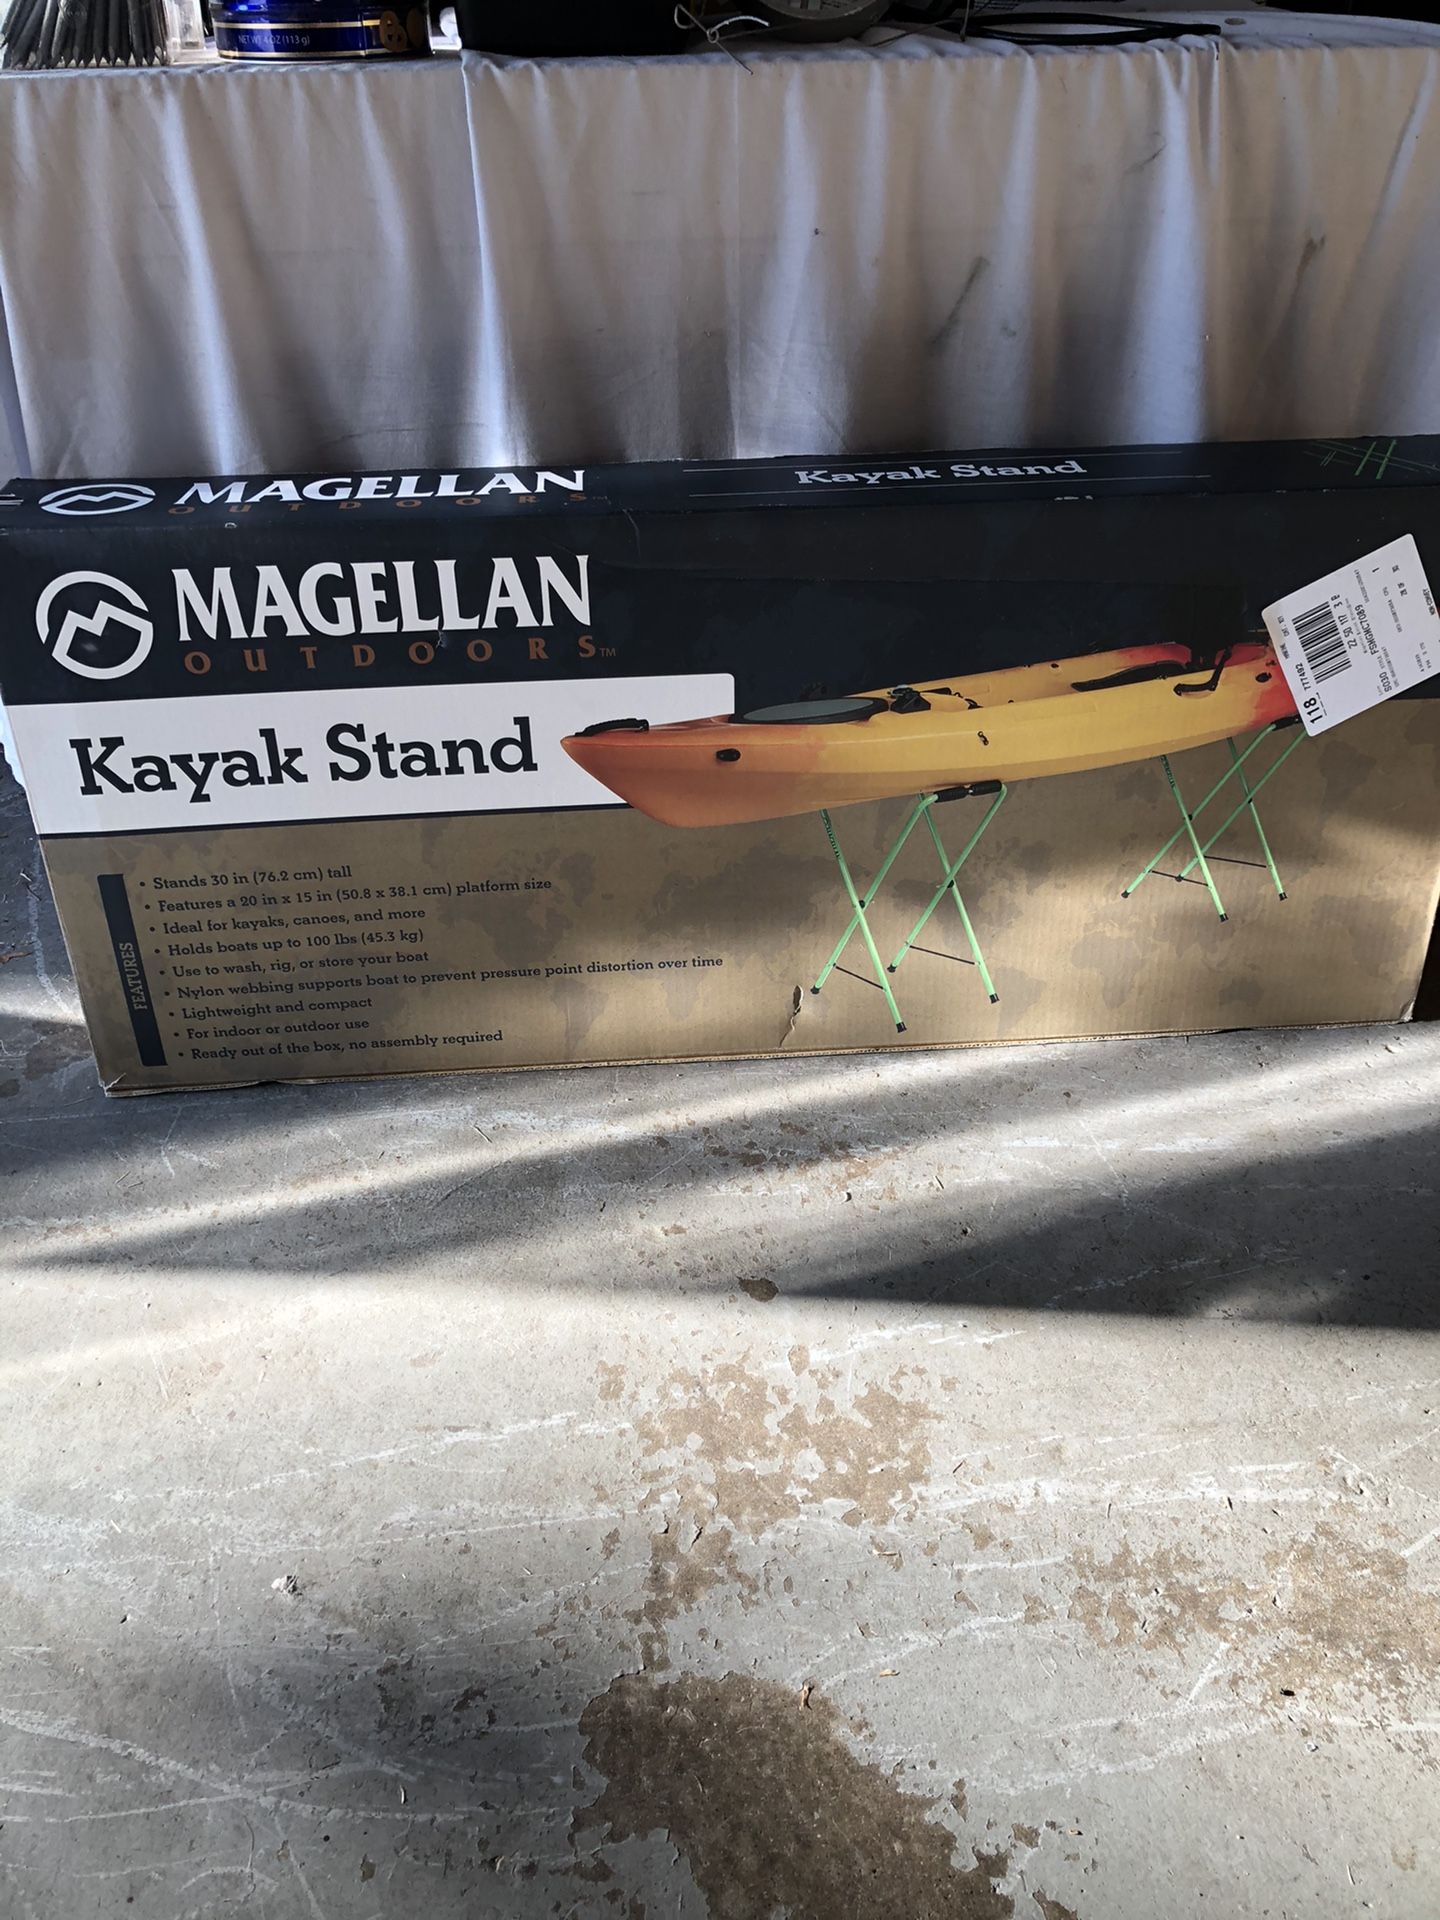 Kayak stand